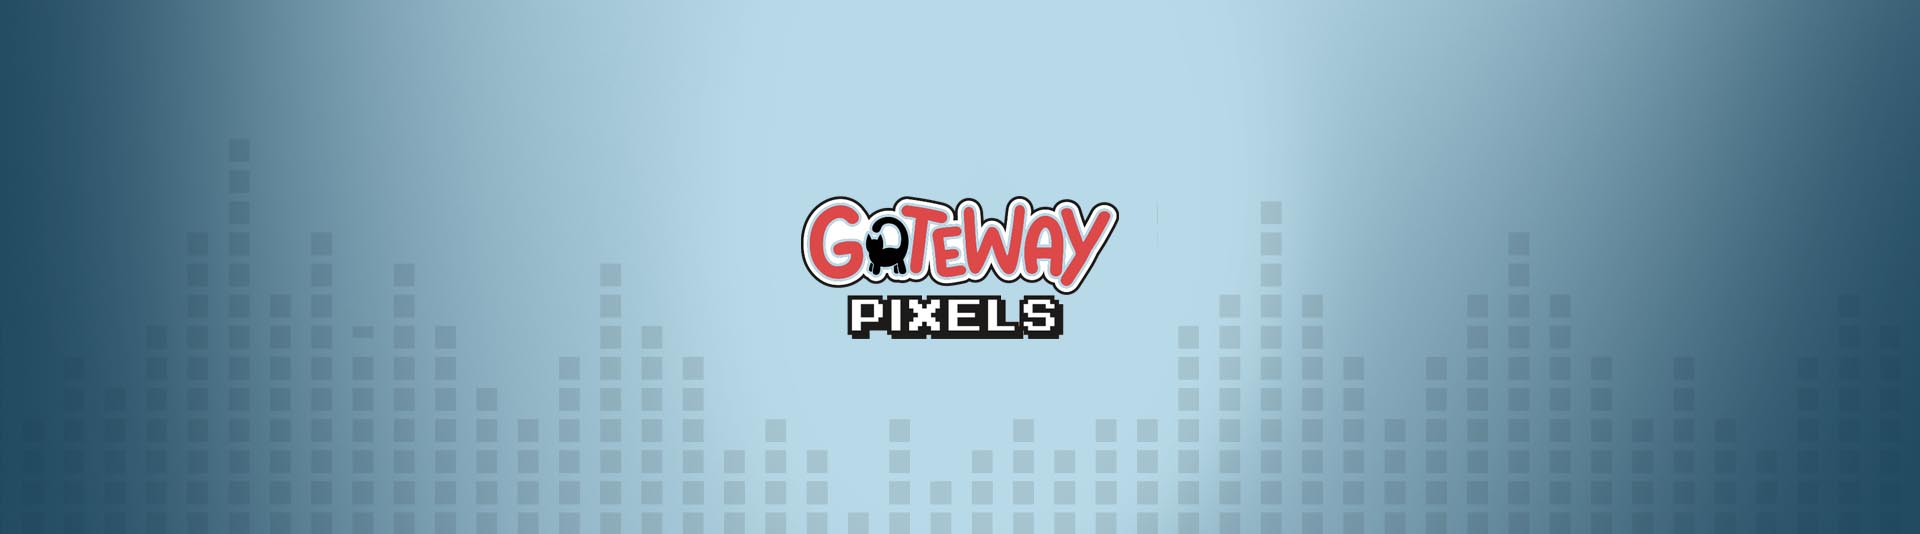 Gateway Pixels